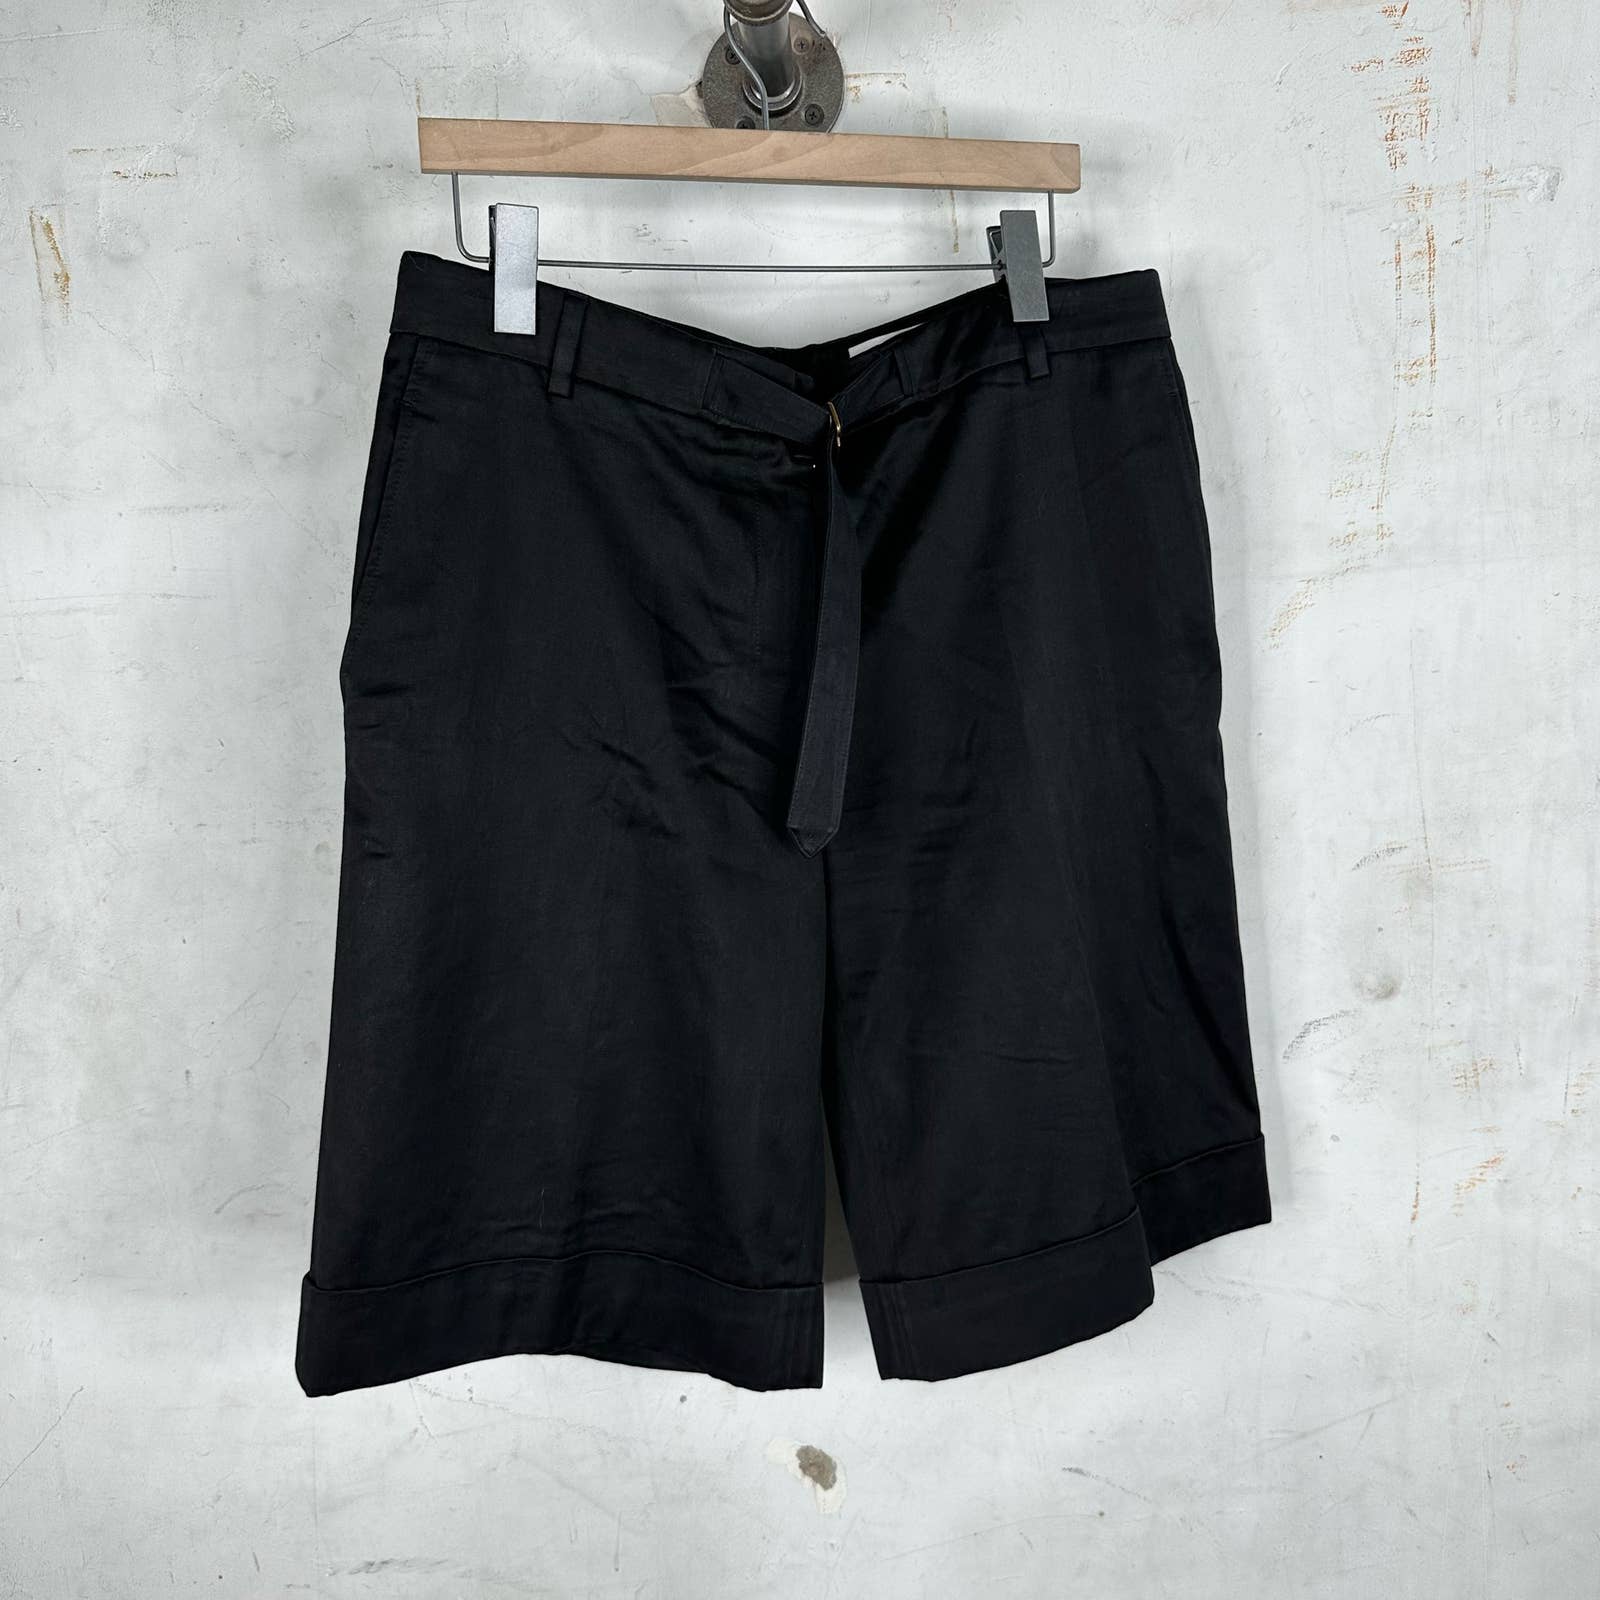 Yves Saint Laurent Dress Shorts